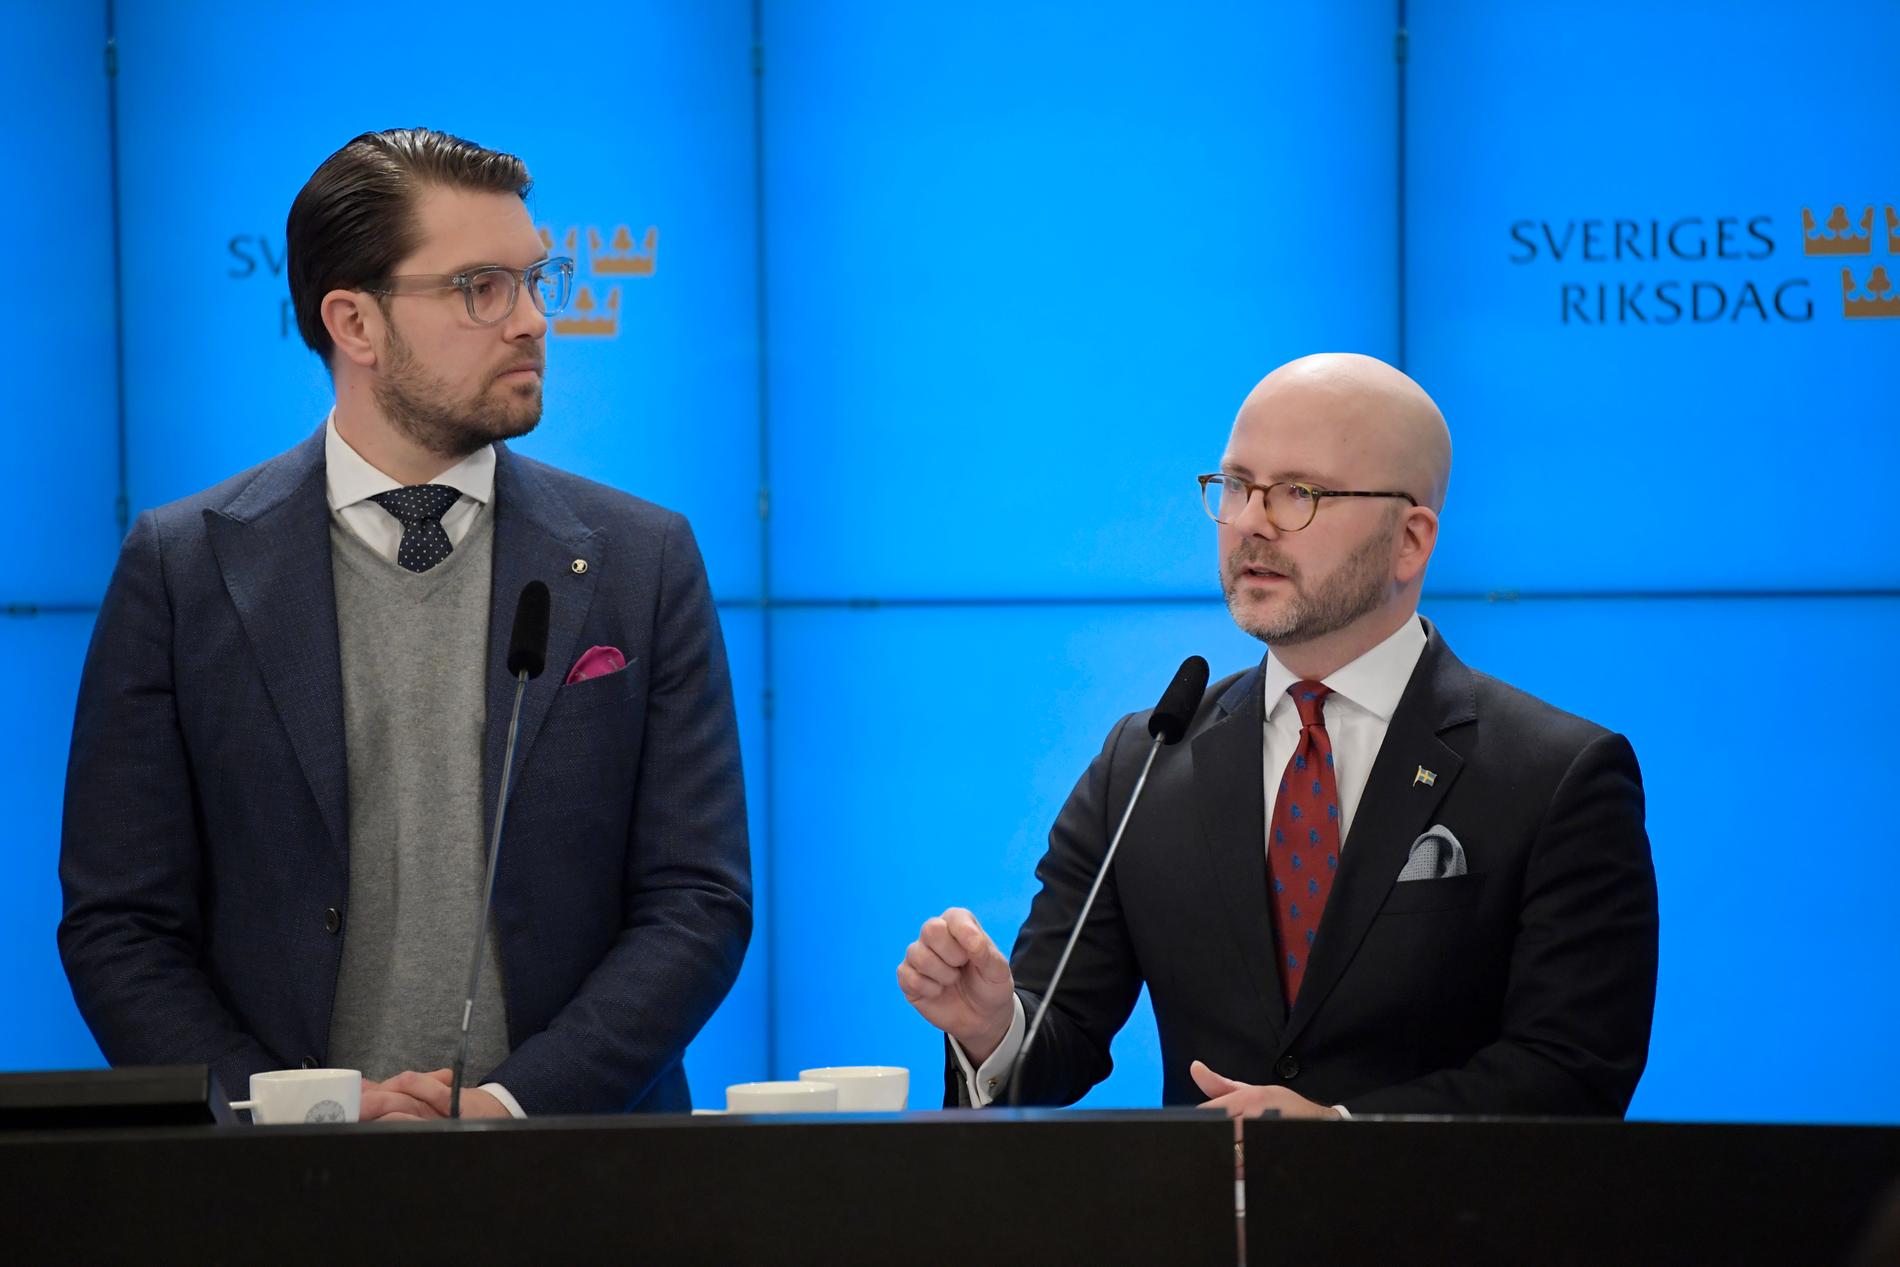 Sverigedemokraternas partiledare Jimmie Åkesson och Charlie Weimers, som får tredjeplatsen på partiets lista i valet till EU-parlamentet.